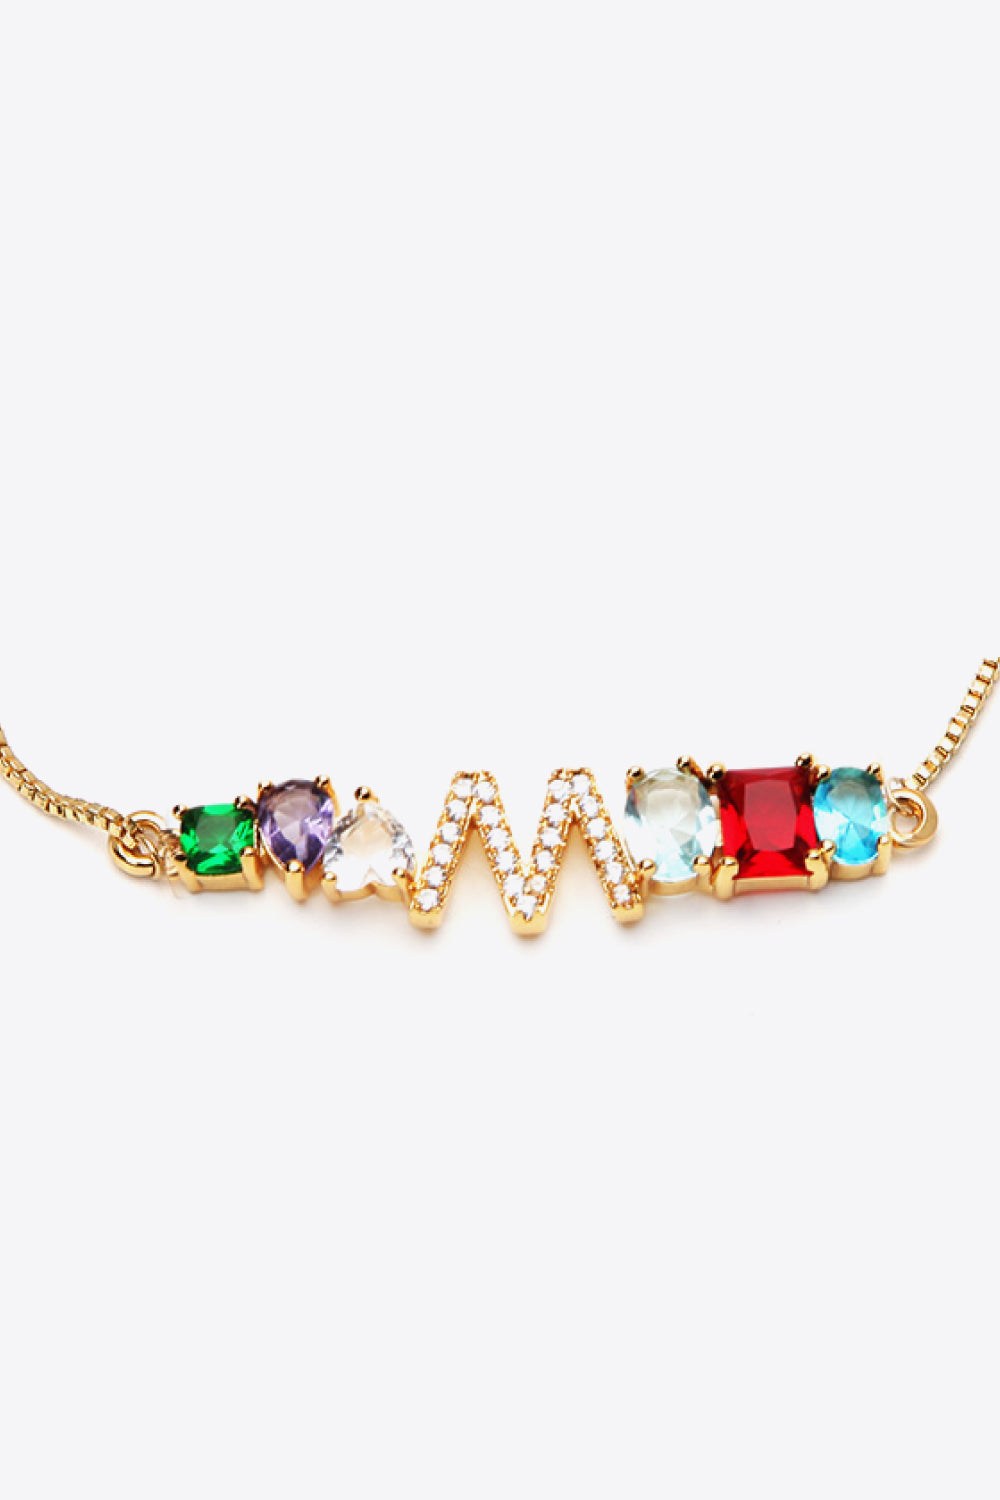 K to T Zircon Bracelet - Women’s Jewelry - Bracelets - 9 - 2024